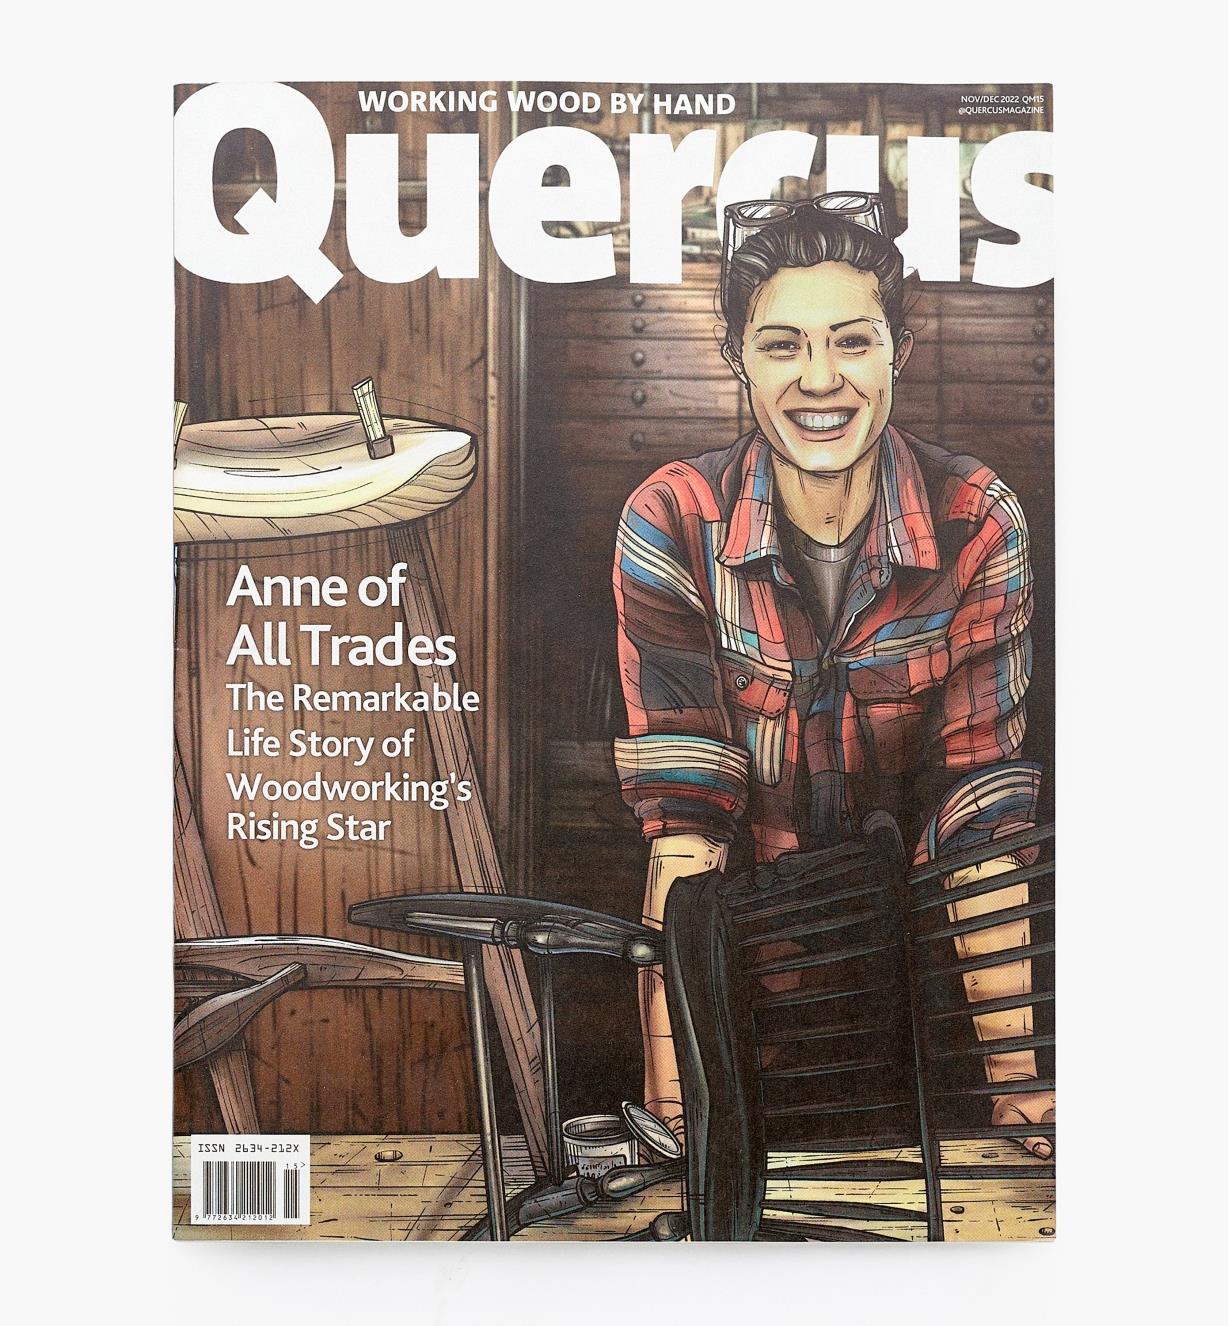 42L9555 - Quercus Magazine, Issue 15